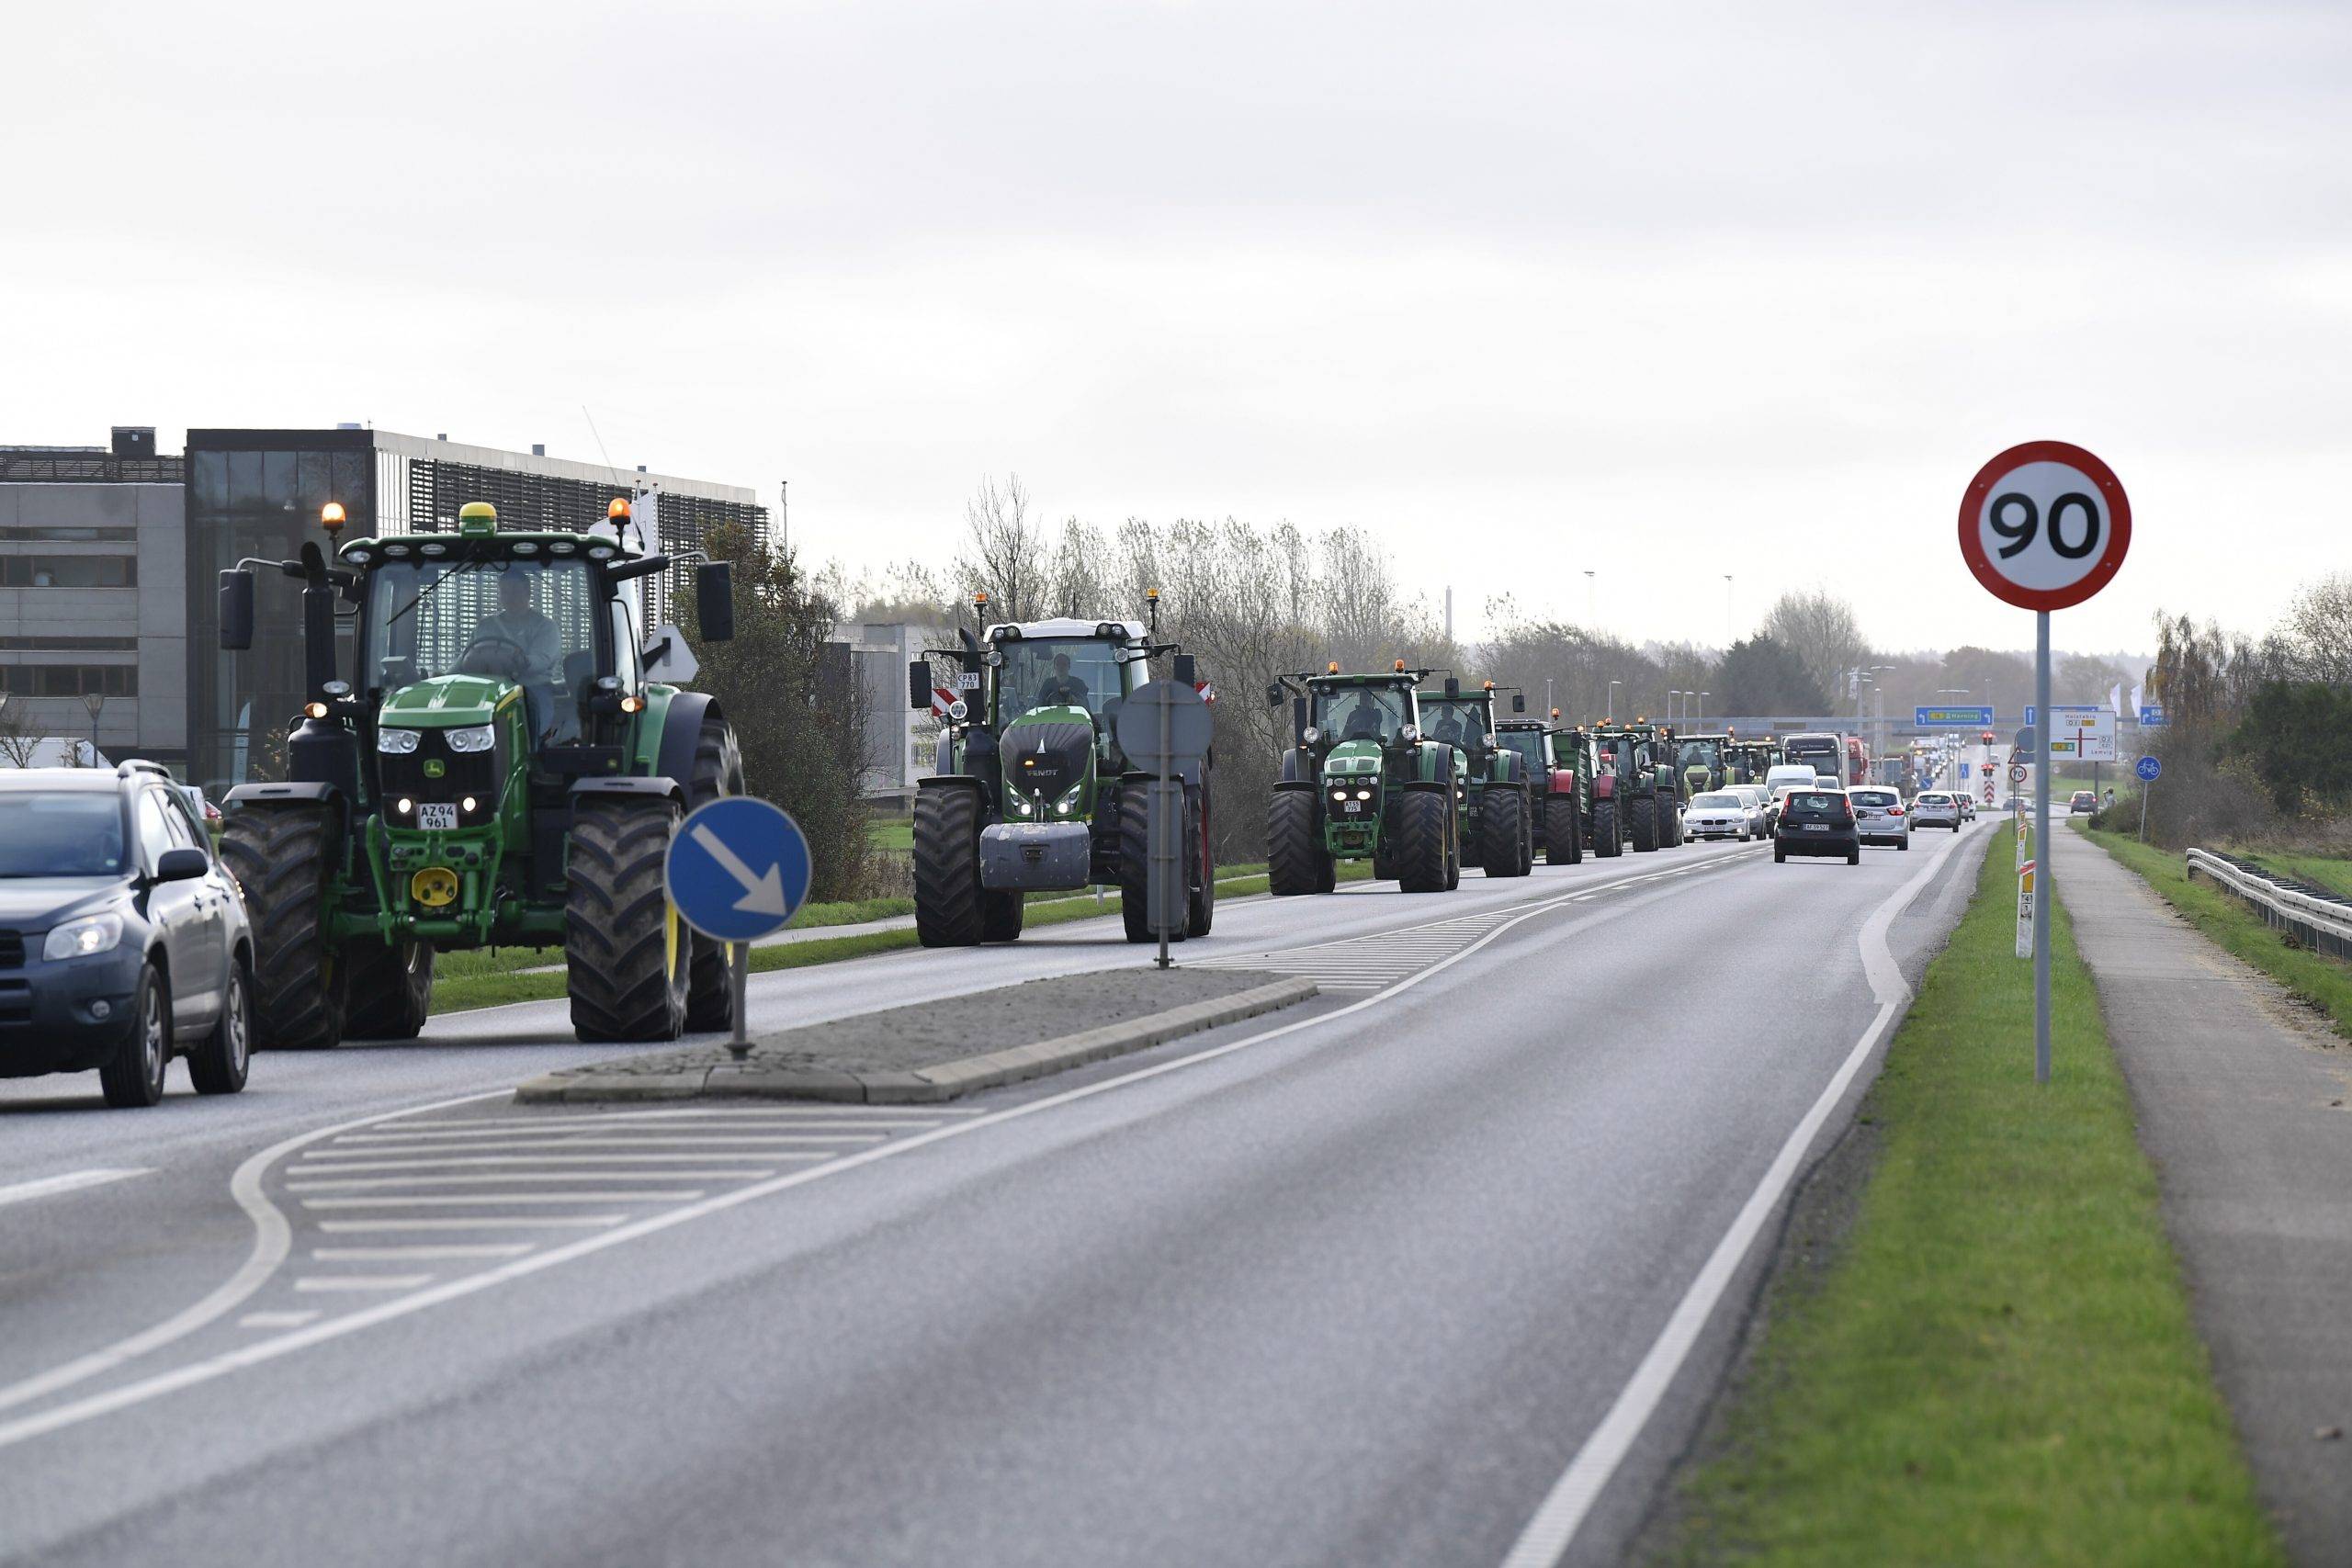 Protesta de granjeros de visones en Holstebro, dentro dee Jutland, Dinamarca